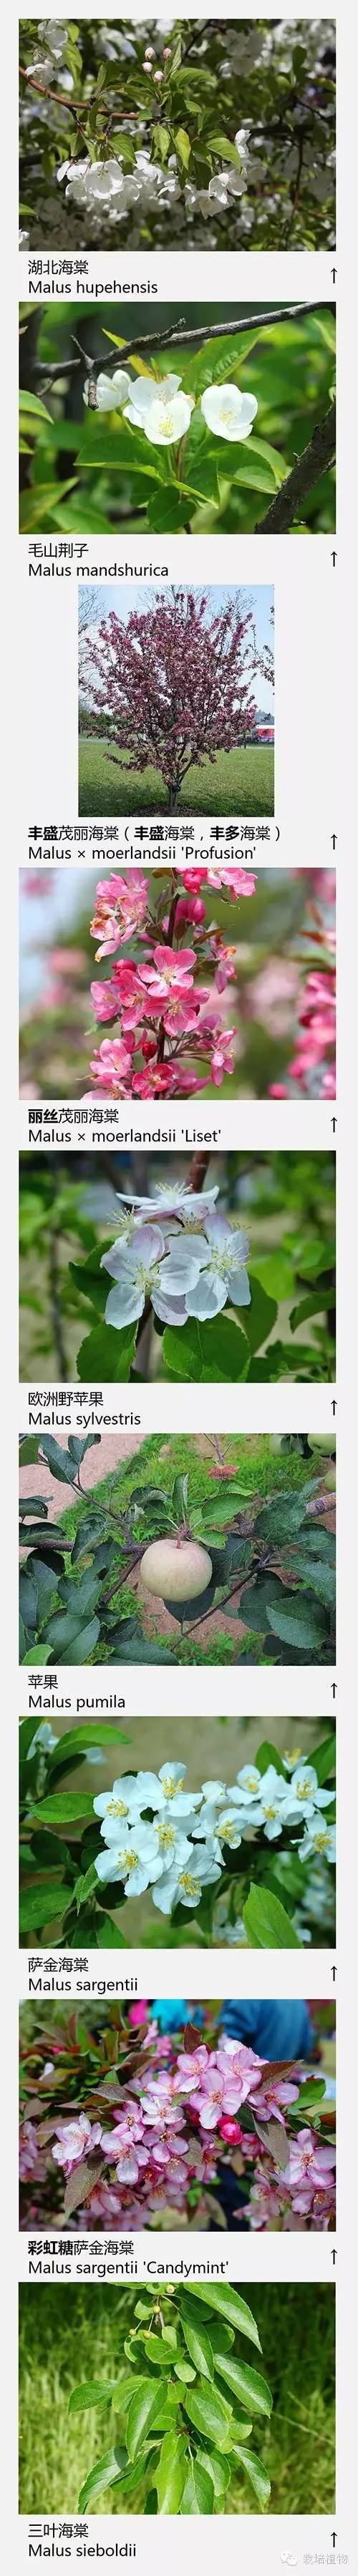 上海数字植物志精选：72种海棠